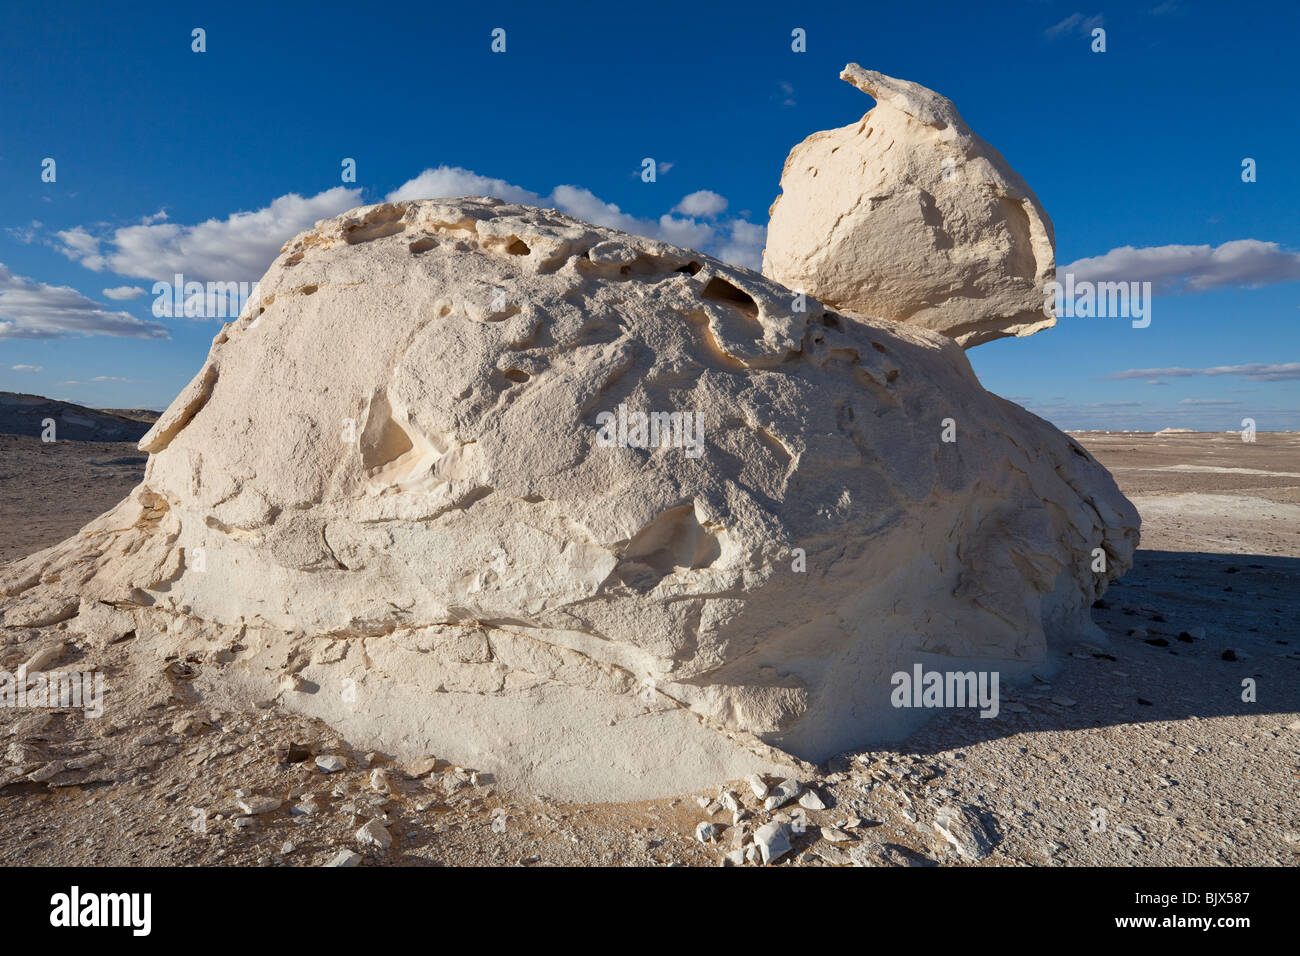 Roches calcaires dans le désert blanc, Farafra oasis, Egypte Banque D'Images